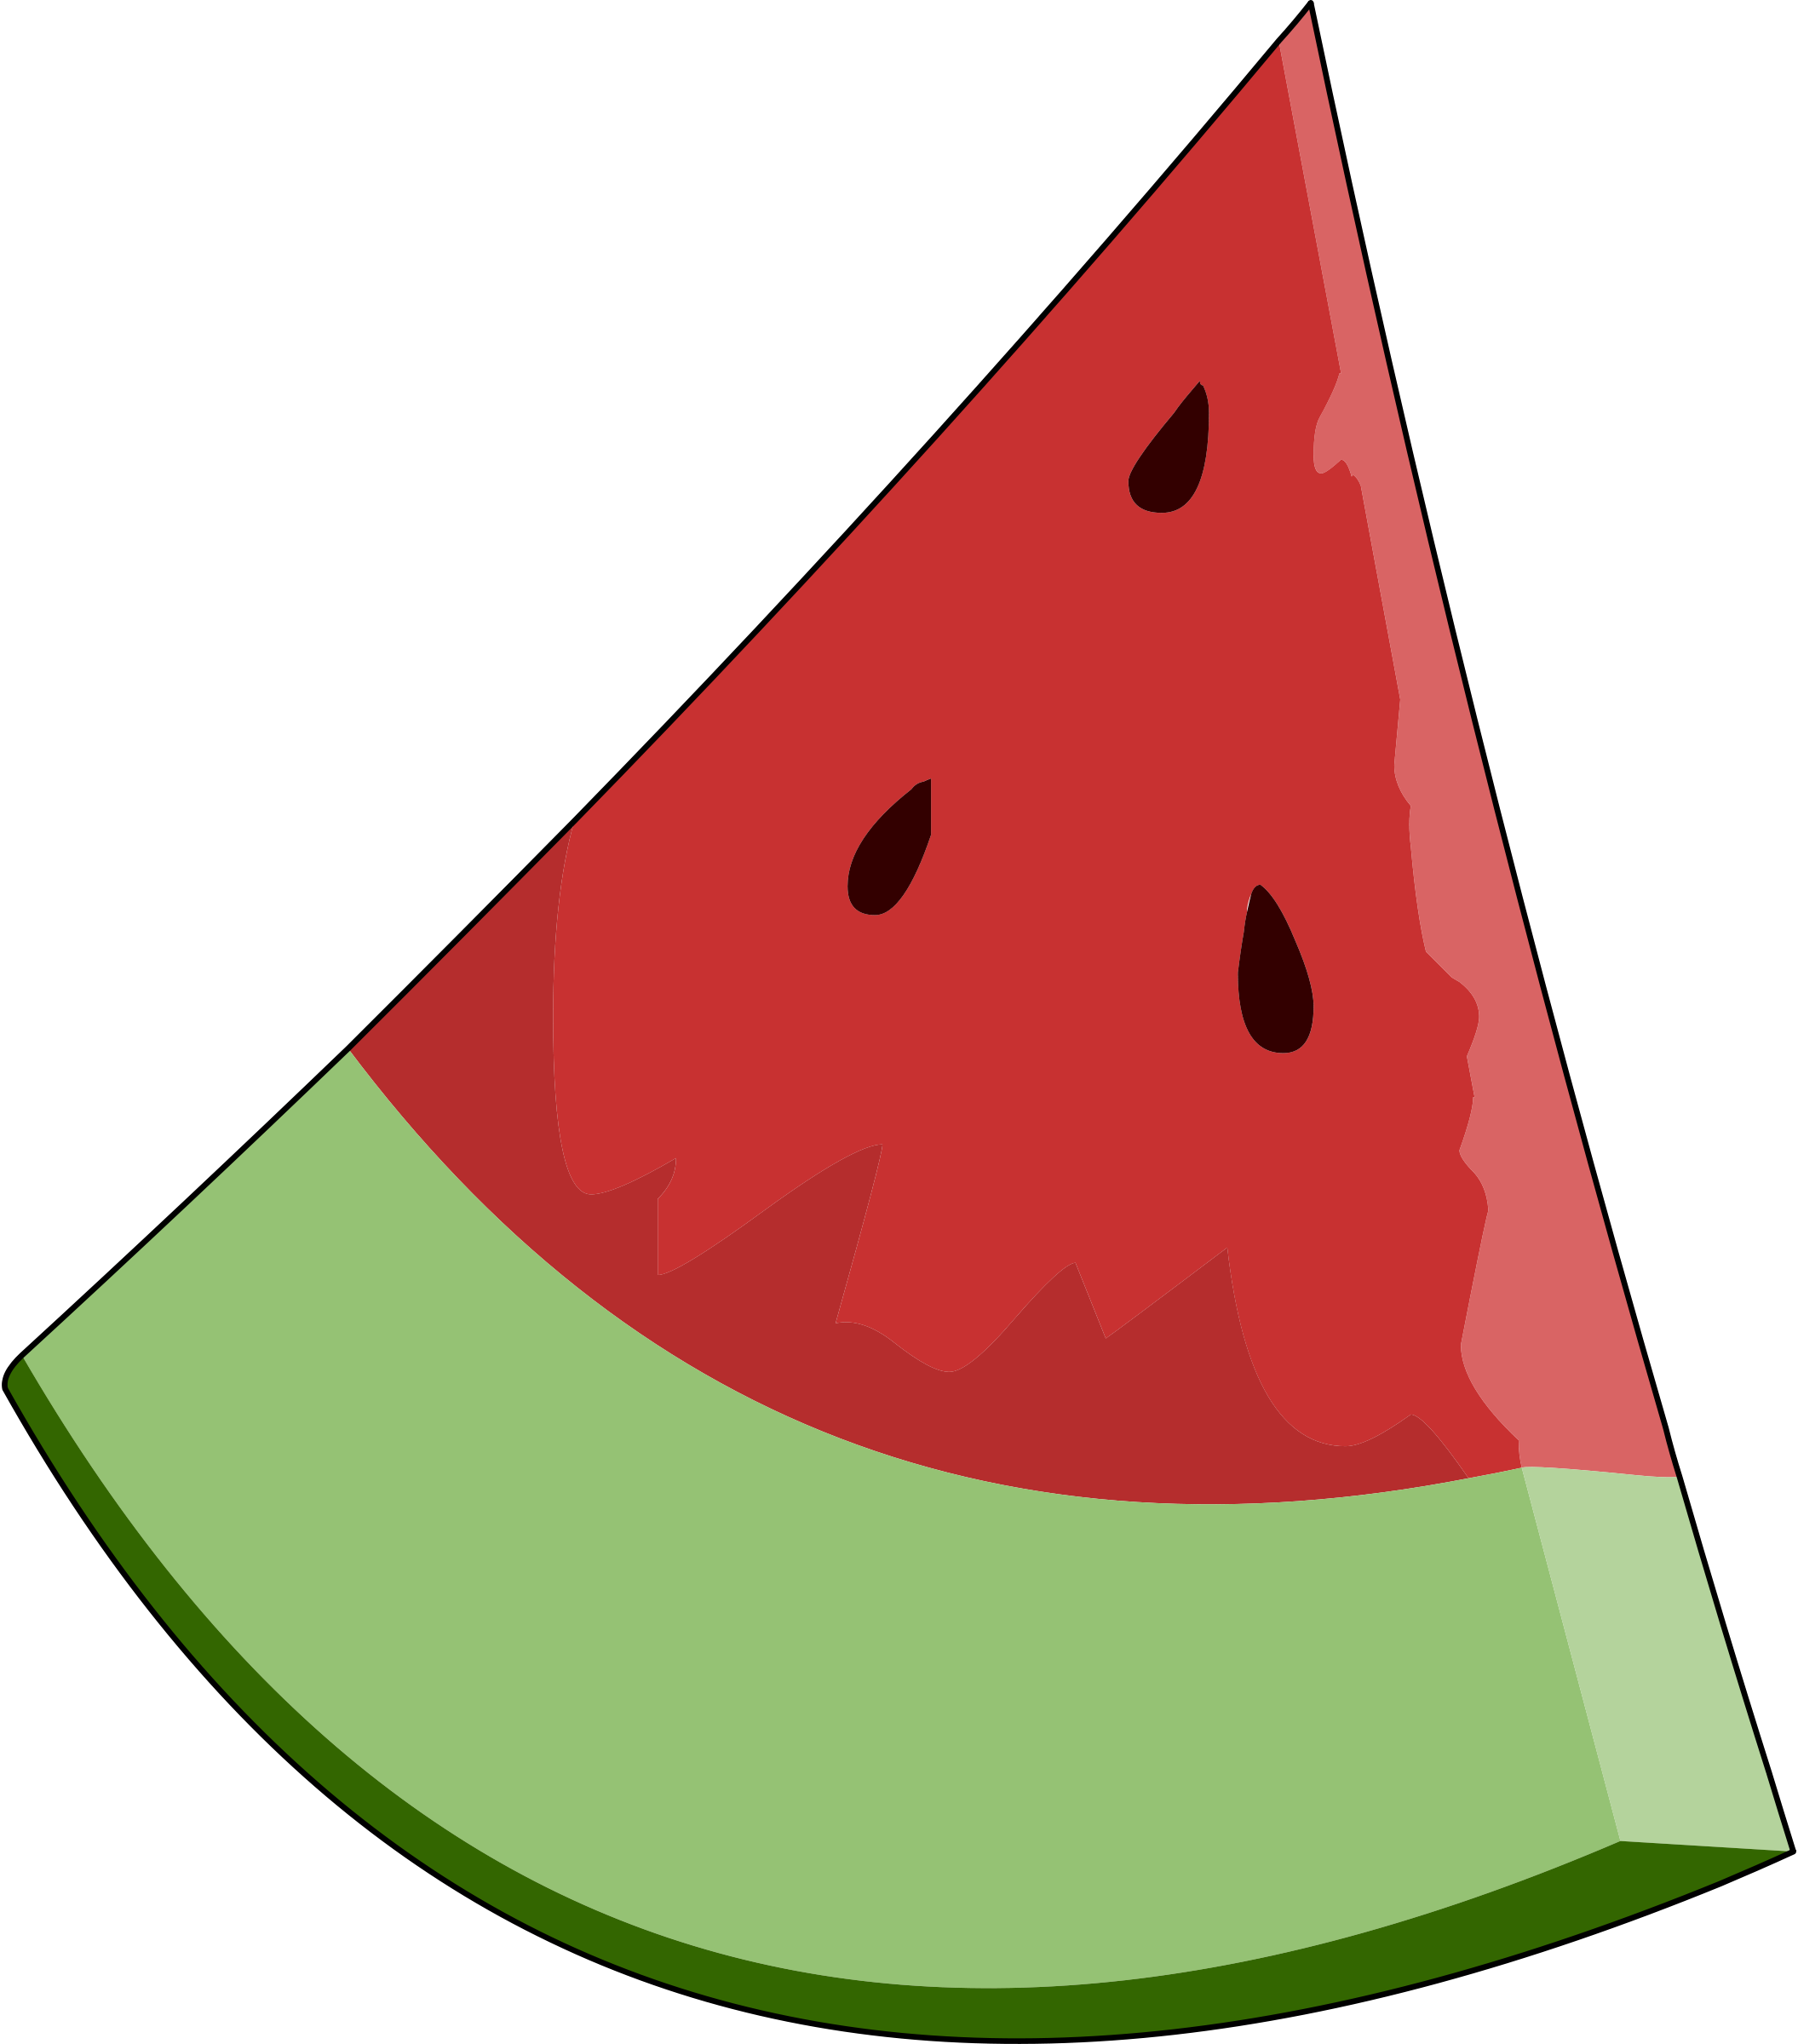 Watermelon cliparts